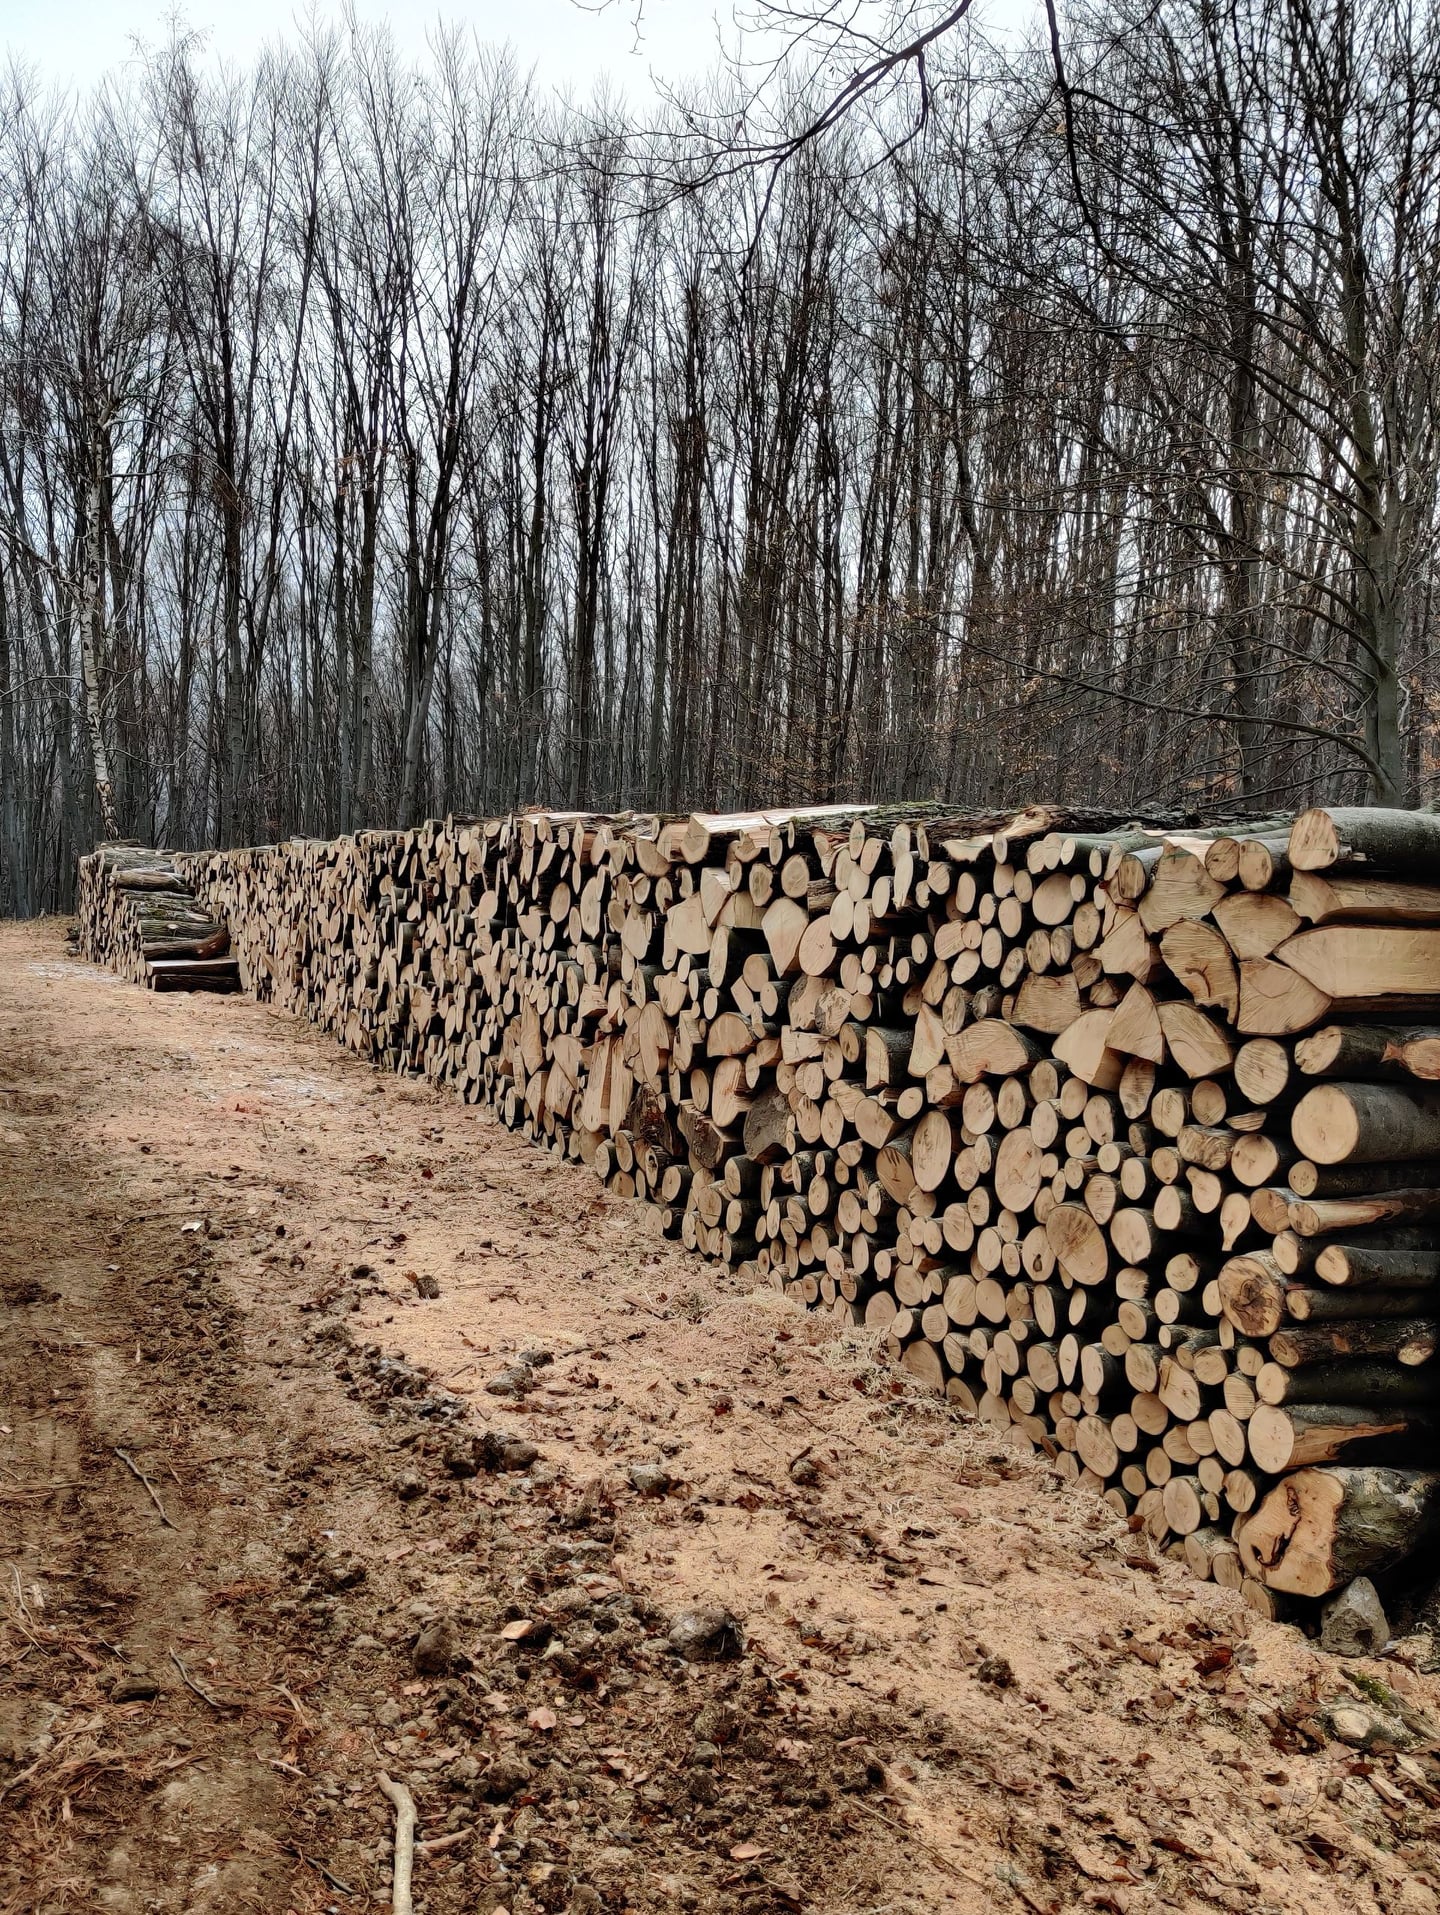 Szociális tűzifaprogram: mintegy 36 ezer köbméter fát szállít az Északerdő